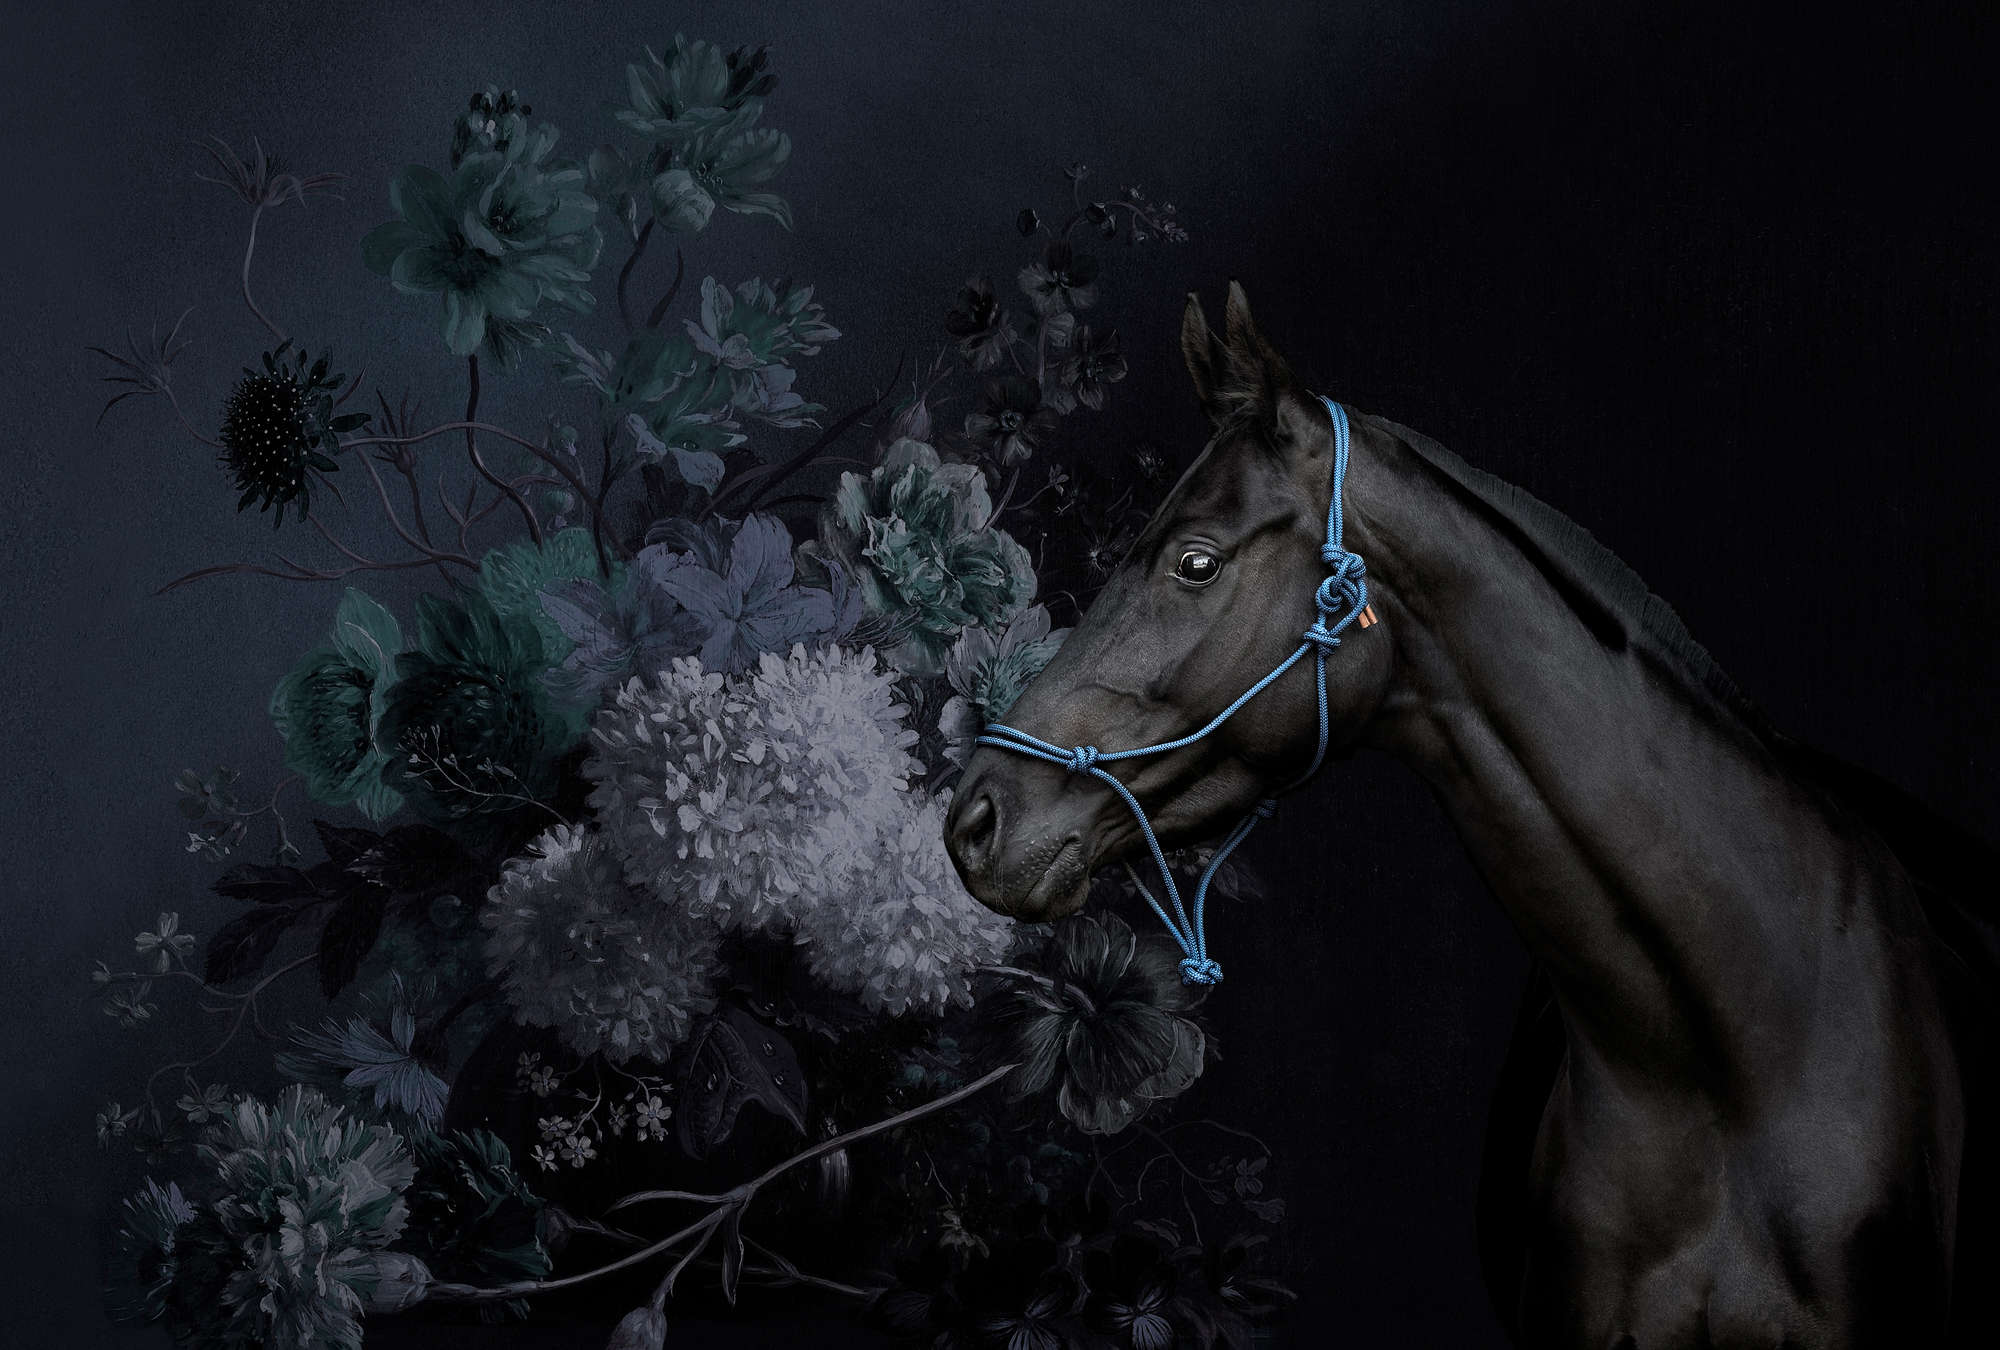             Cavalli in stile ritratto murale con fiori
        